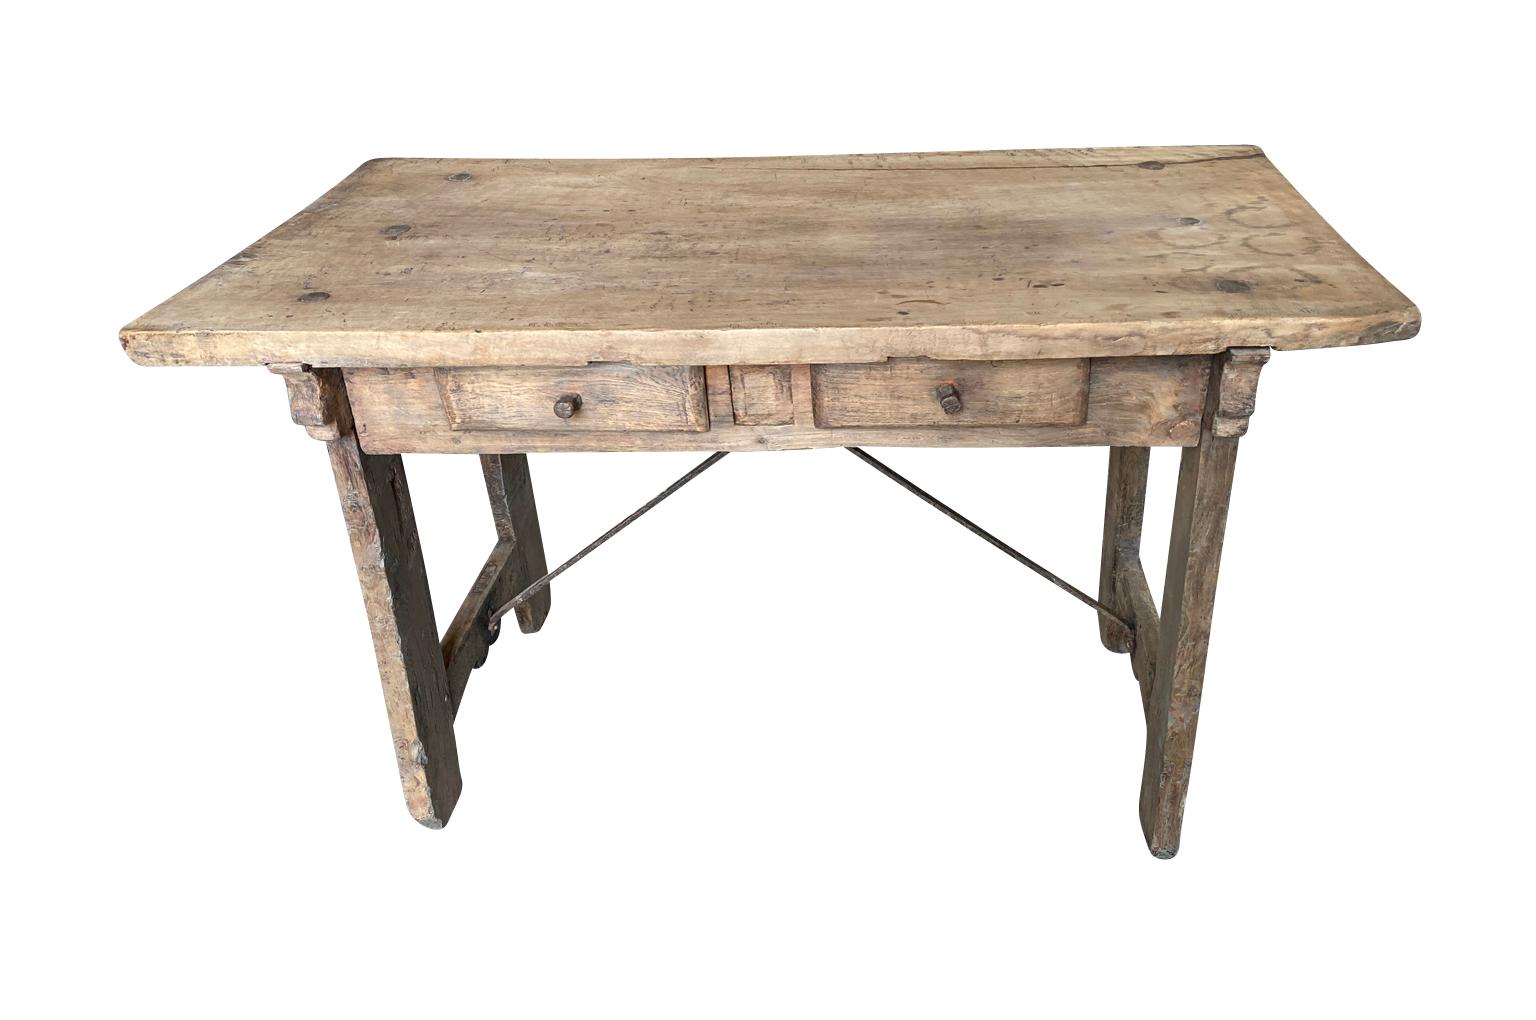 Très beau bureau - table à écrire du 17e siècle provenant de la région catalane de l'Espagne.  Construite en noyer et châtaignier, avec un plateau en bois massif, 2 tiroirs et des châssis en fer forgé.  Merveilleuse patine. 